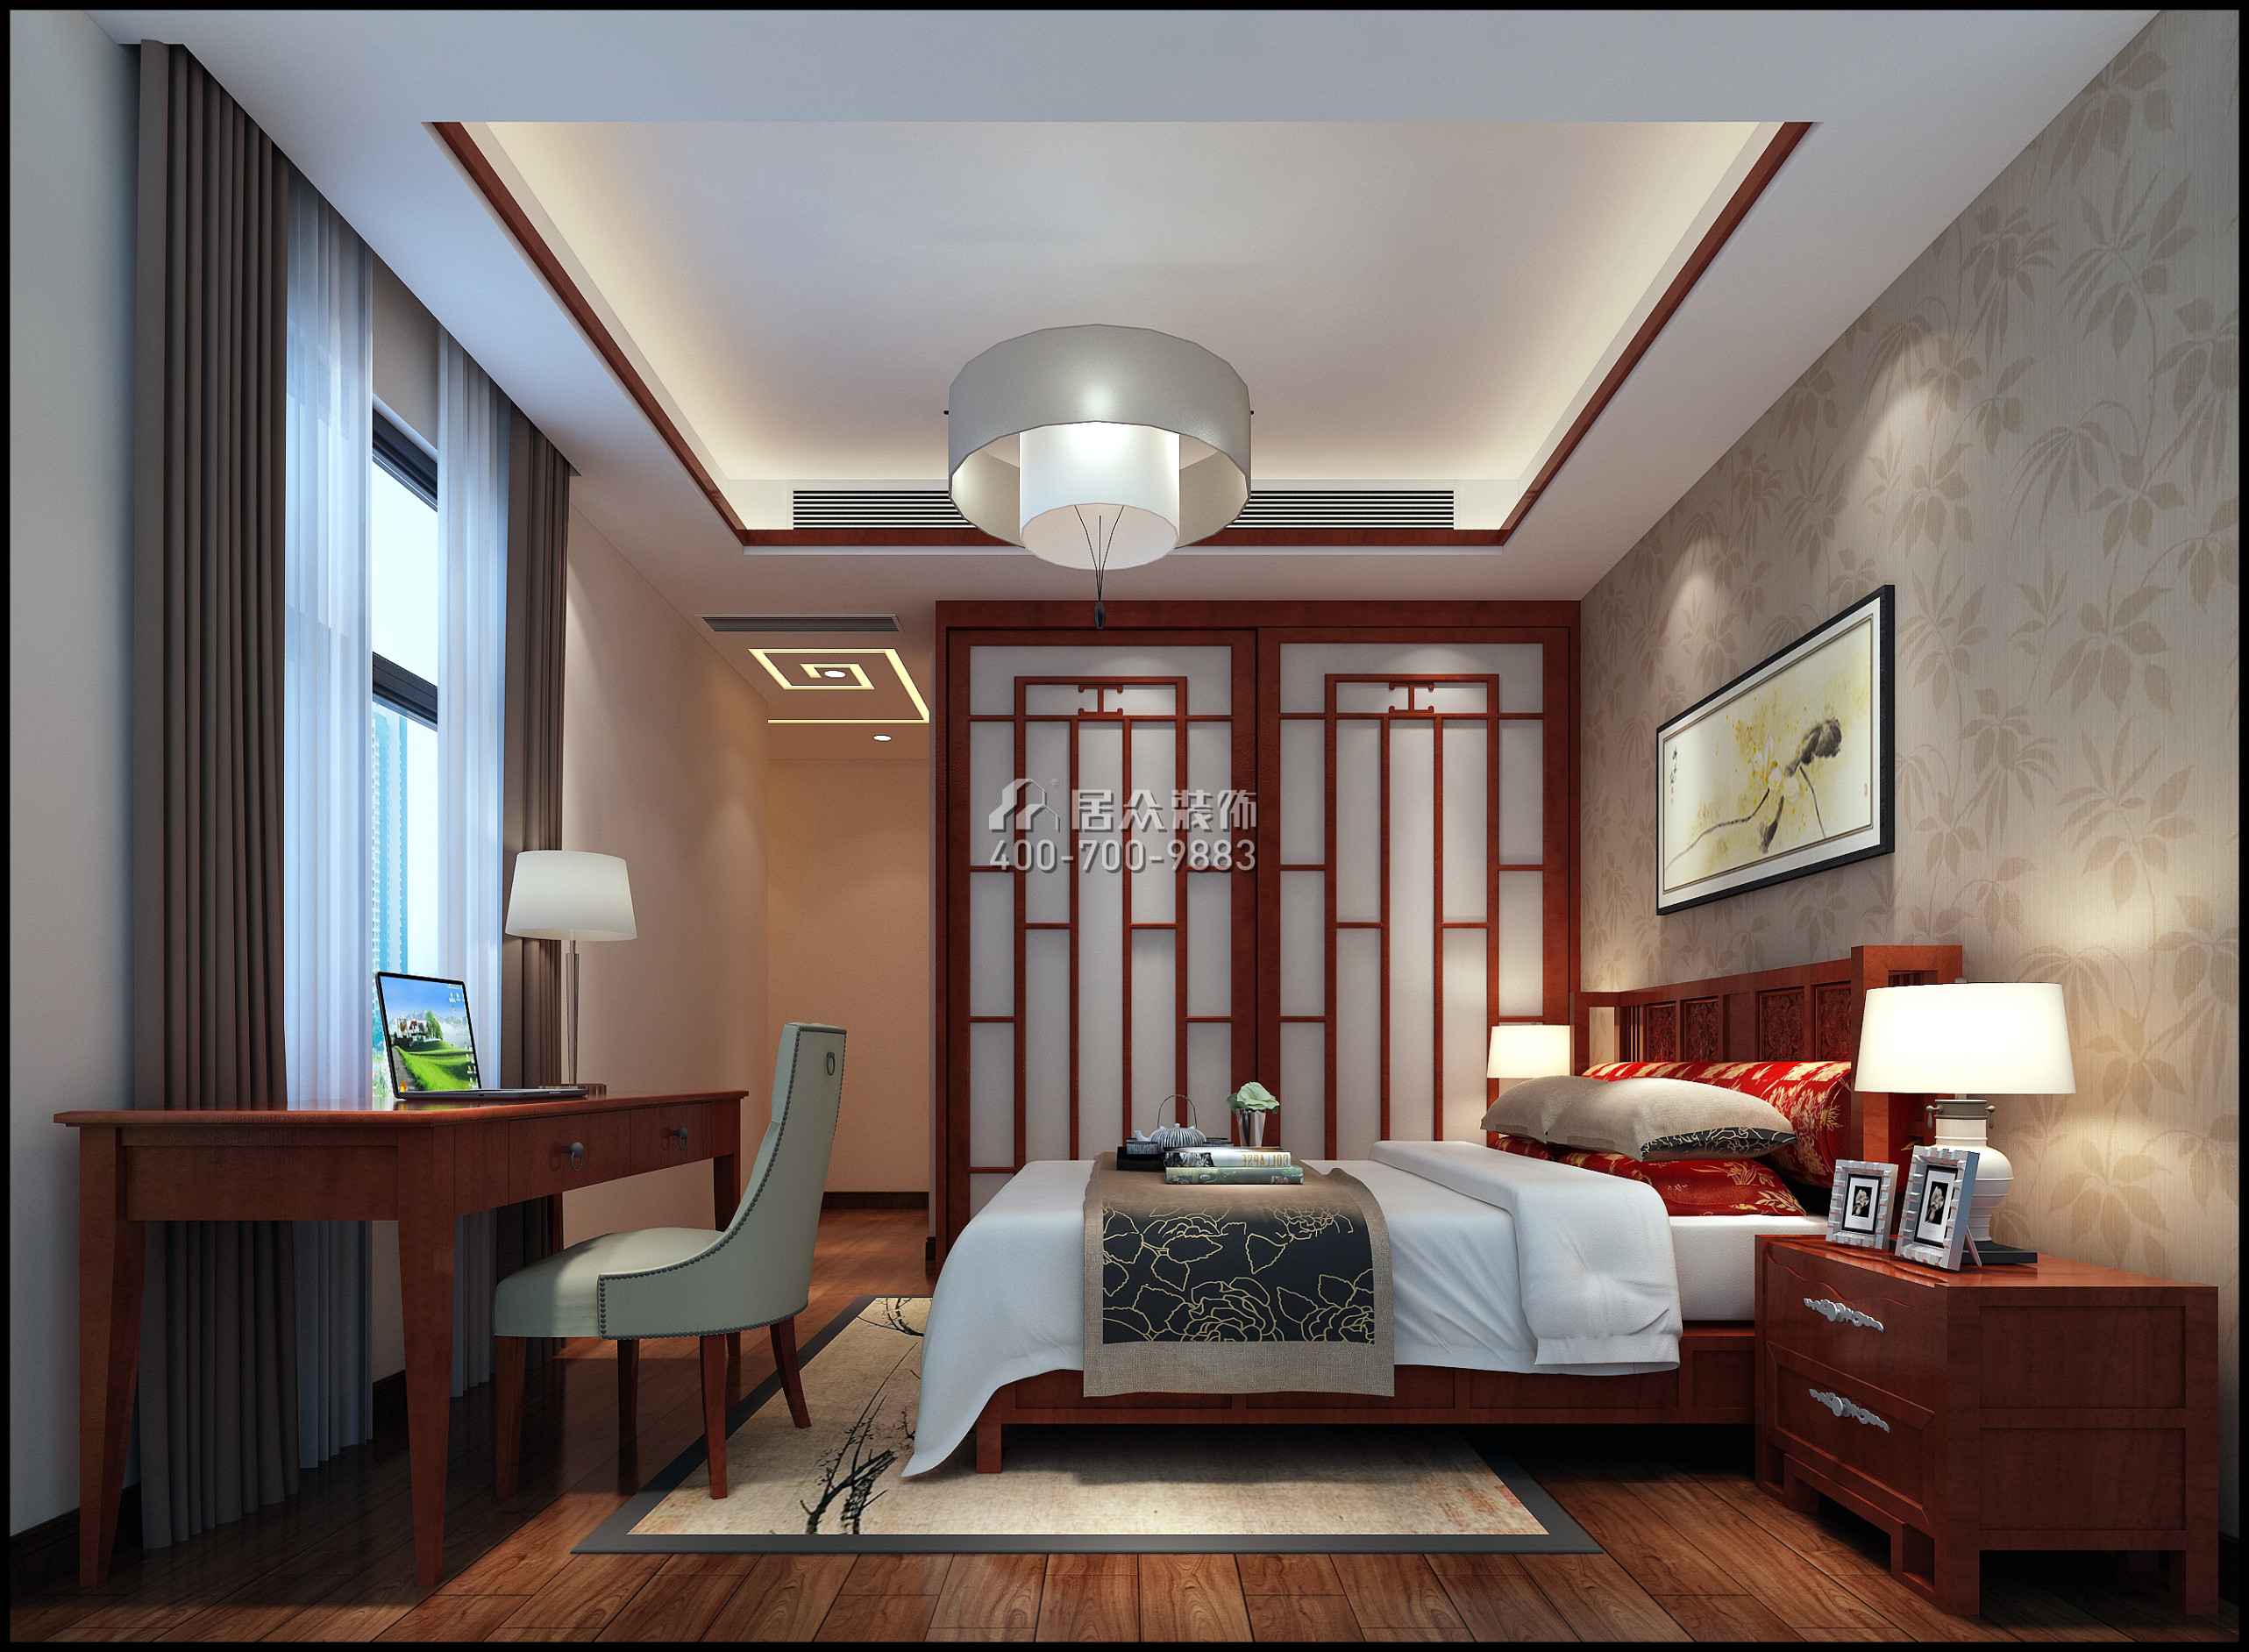 仁山智水花园一期140平方米中式风格平层户型卧室装修效果图